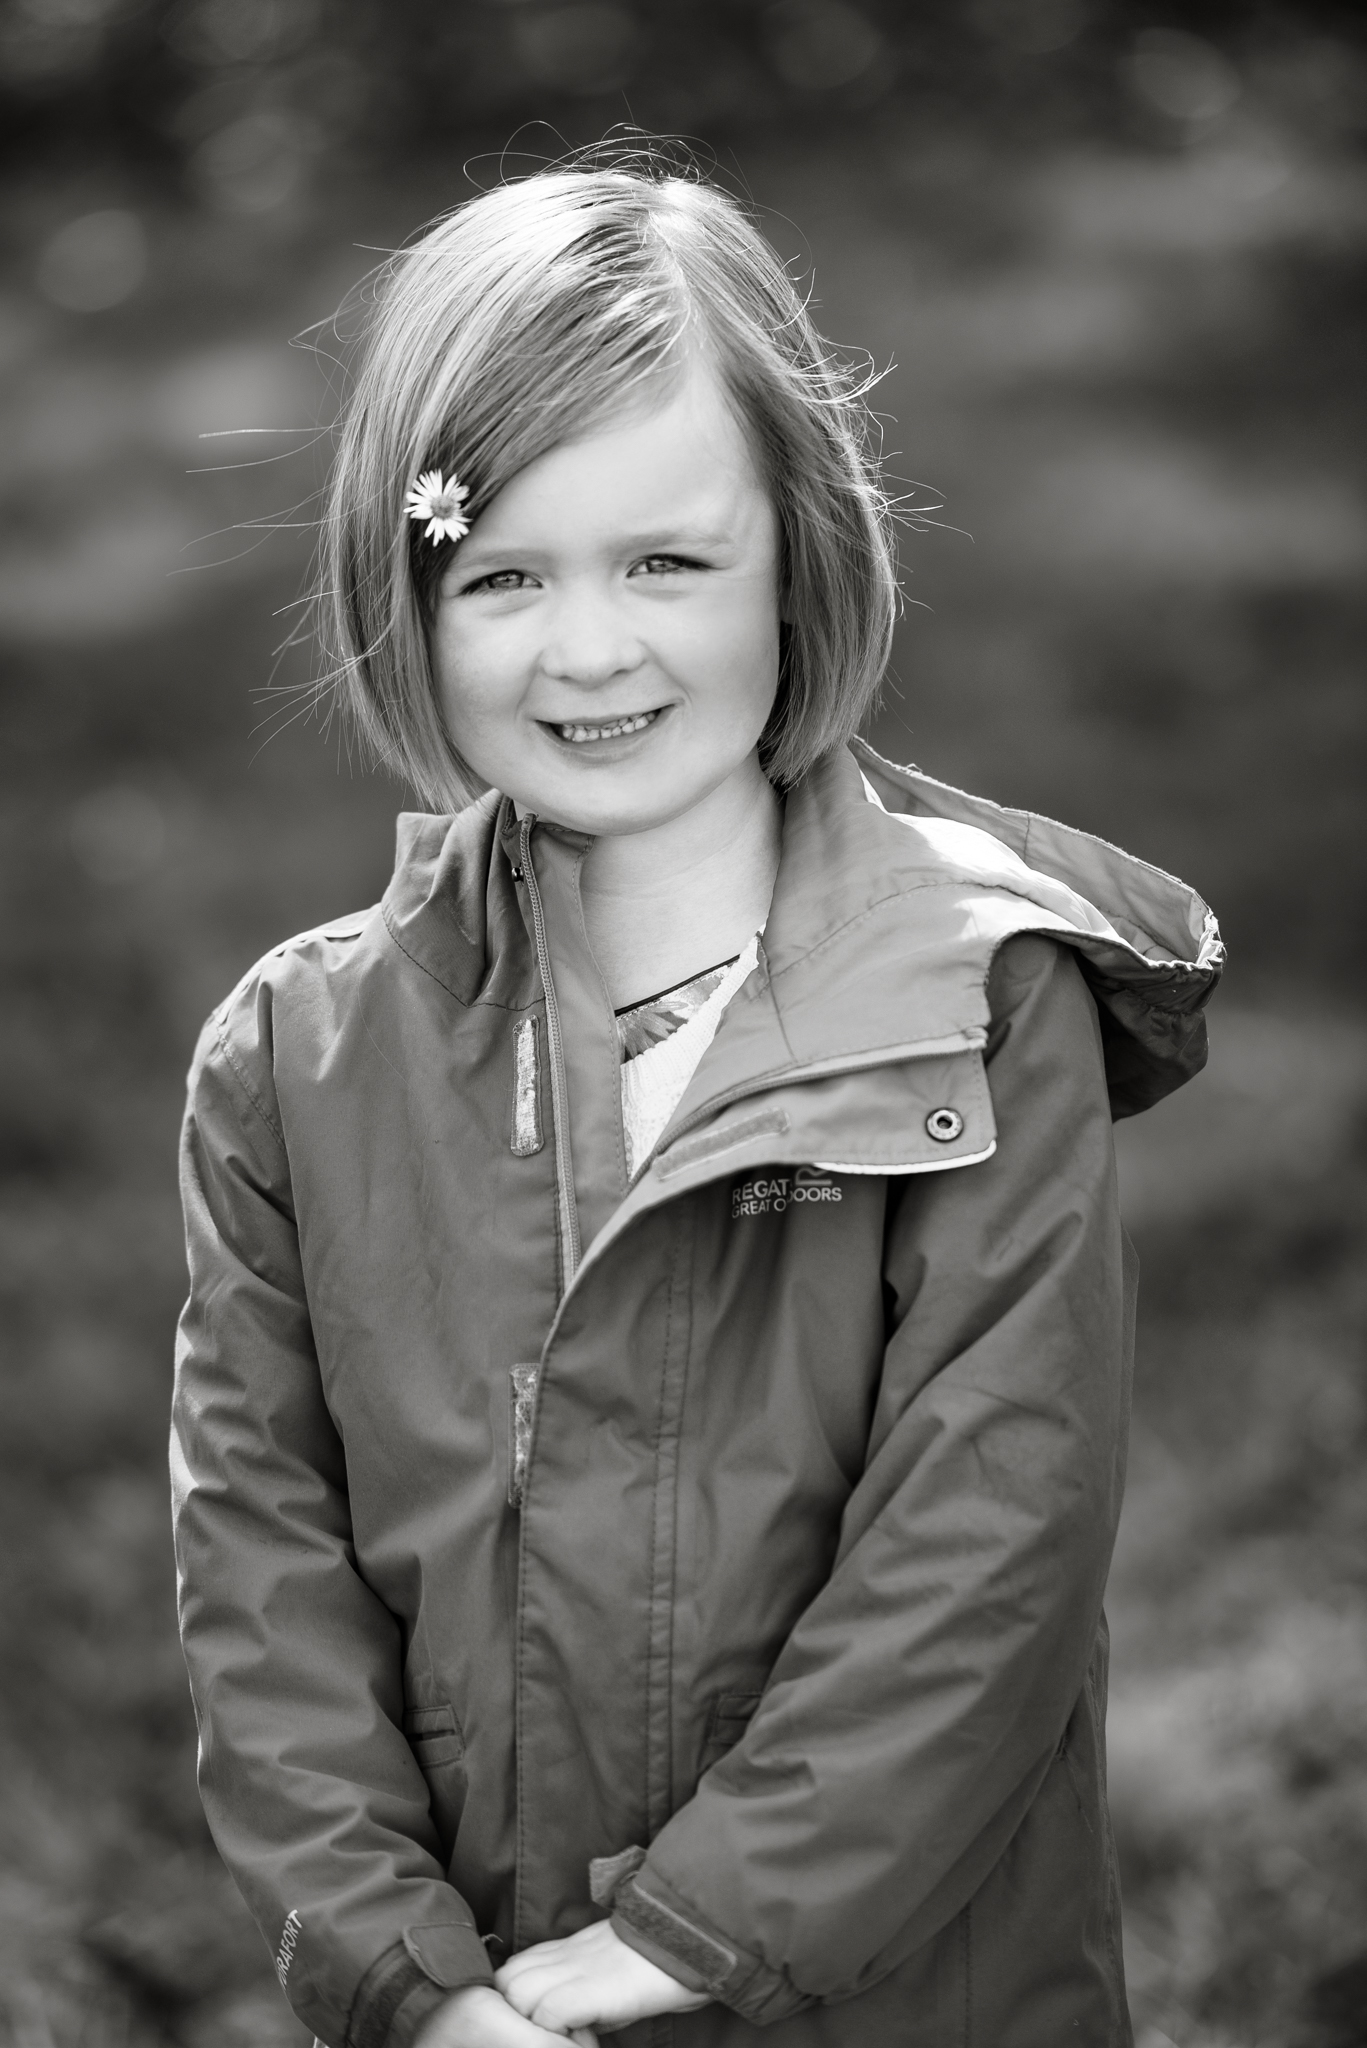 Family photographer Edinburgh - little girl with daisy in hair